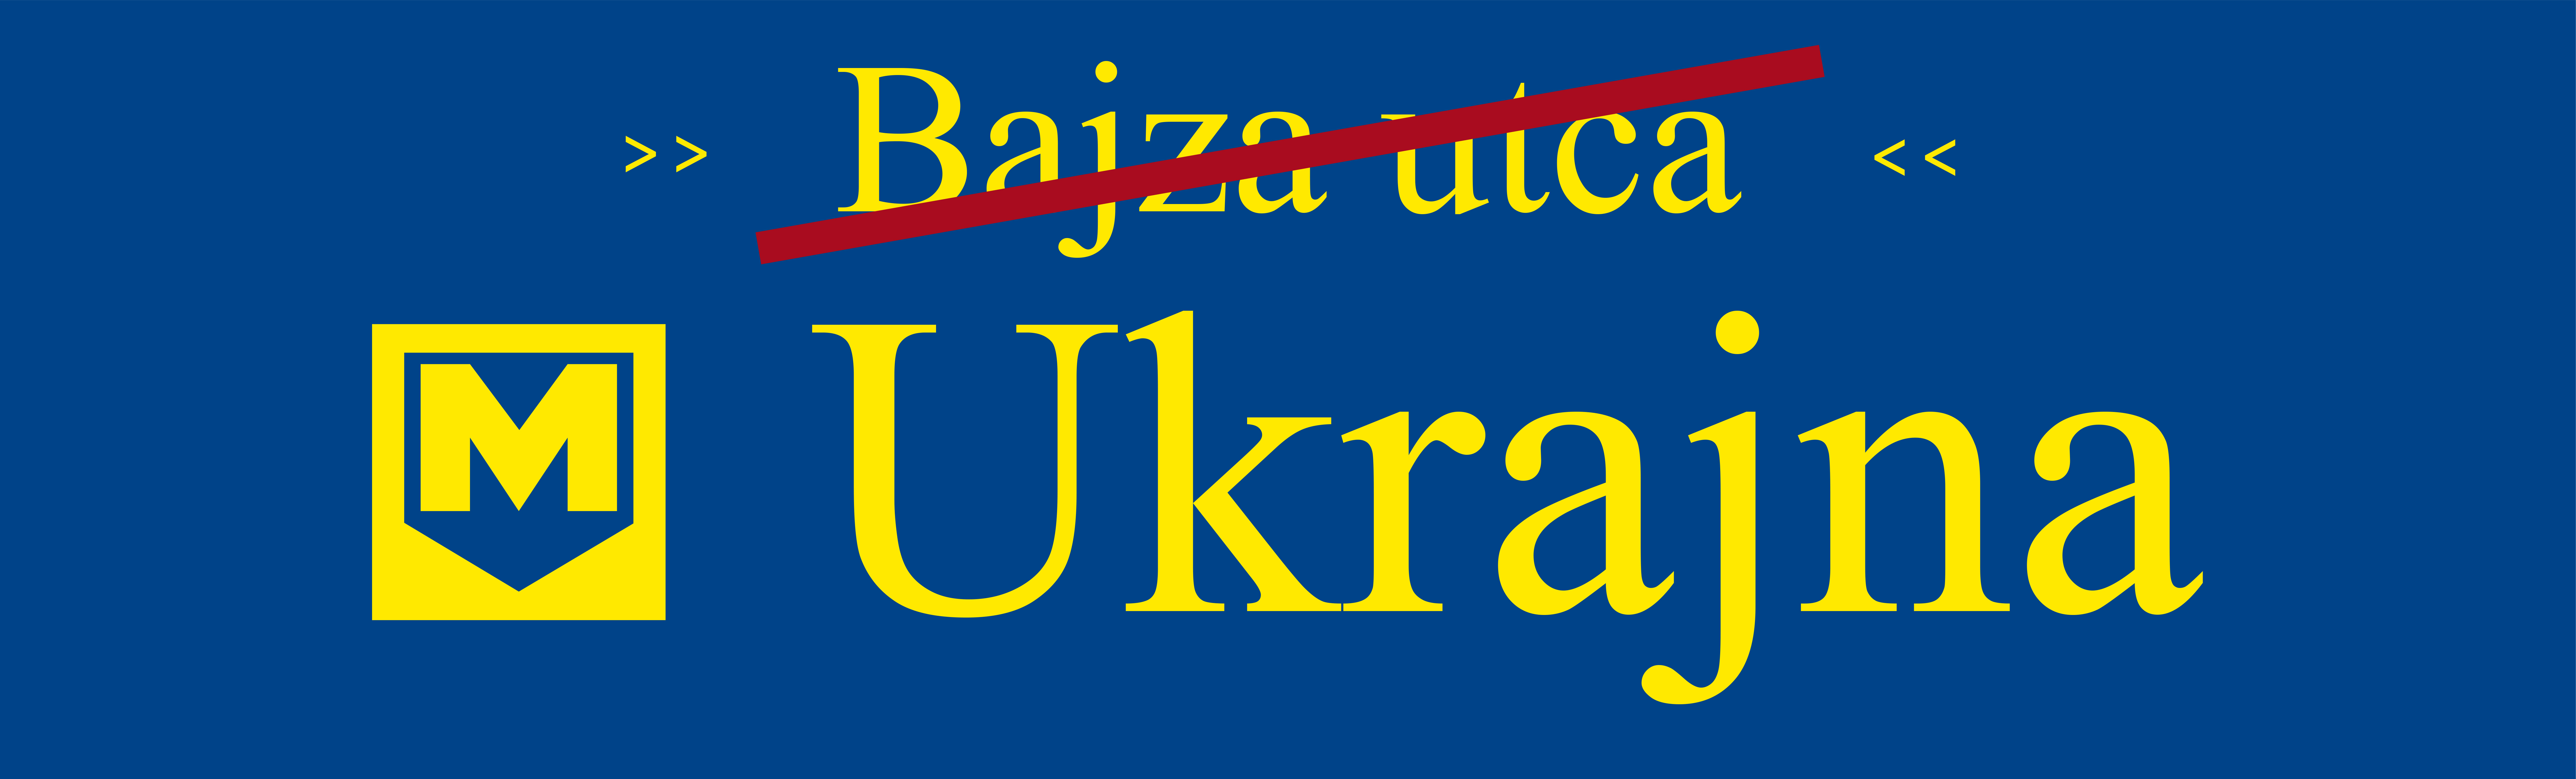 bajza-ukrajna_tabla2.jpg